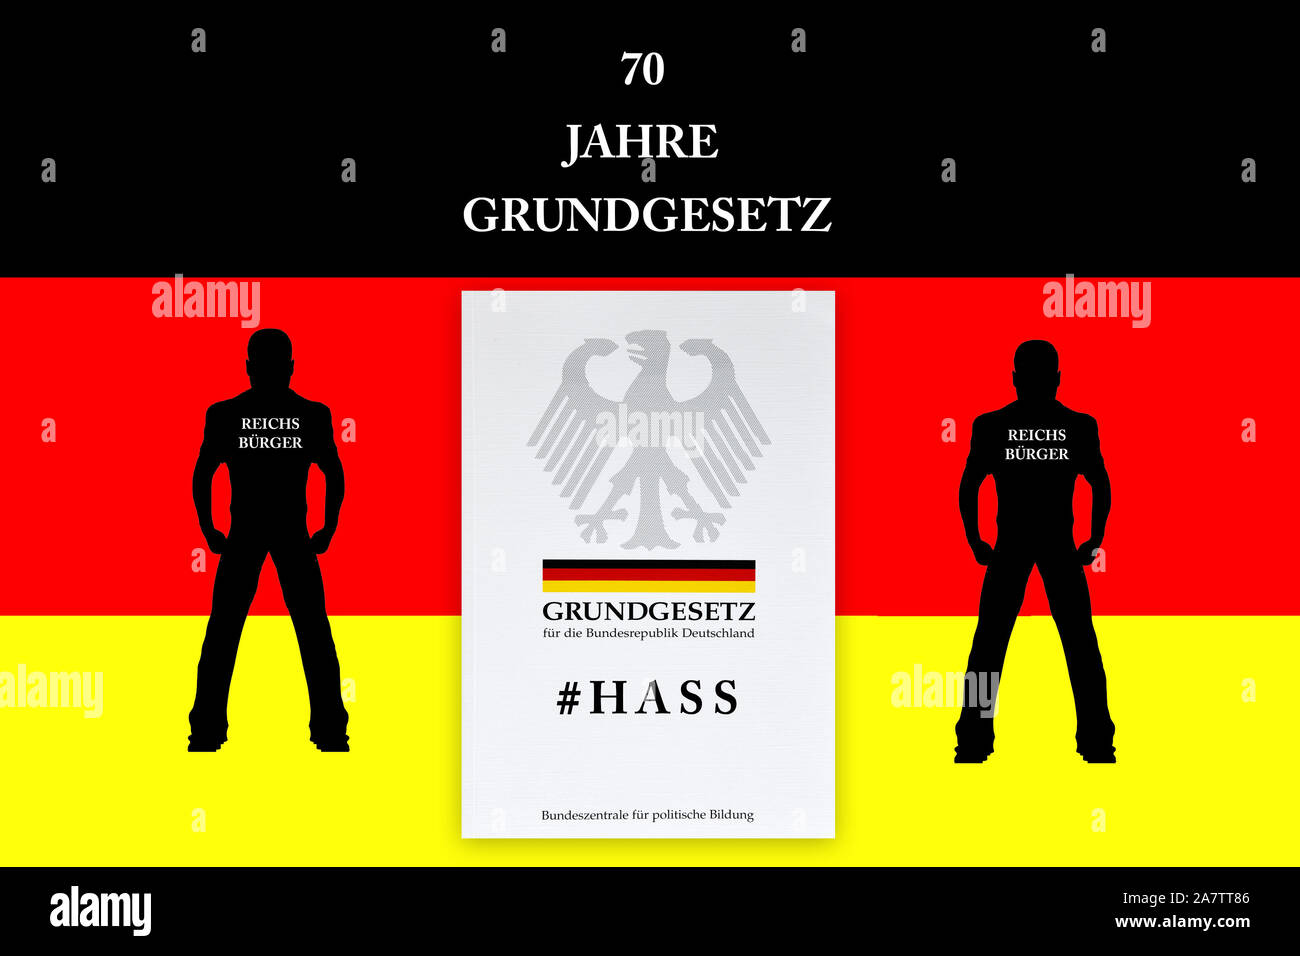 70 Jahre Grundgesetz, 1949 - 2019, Skinhead, Nazi, Reichsbürger, Protestler, Stock Photo